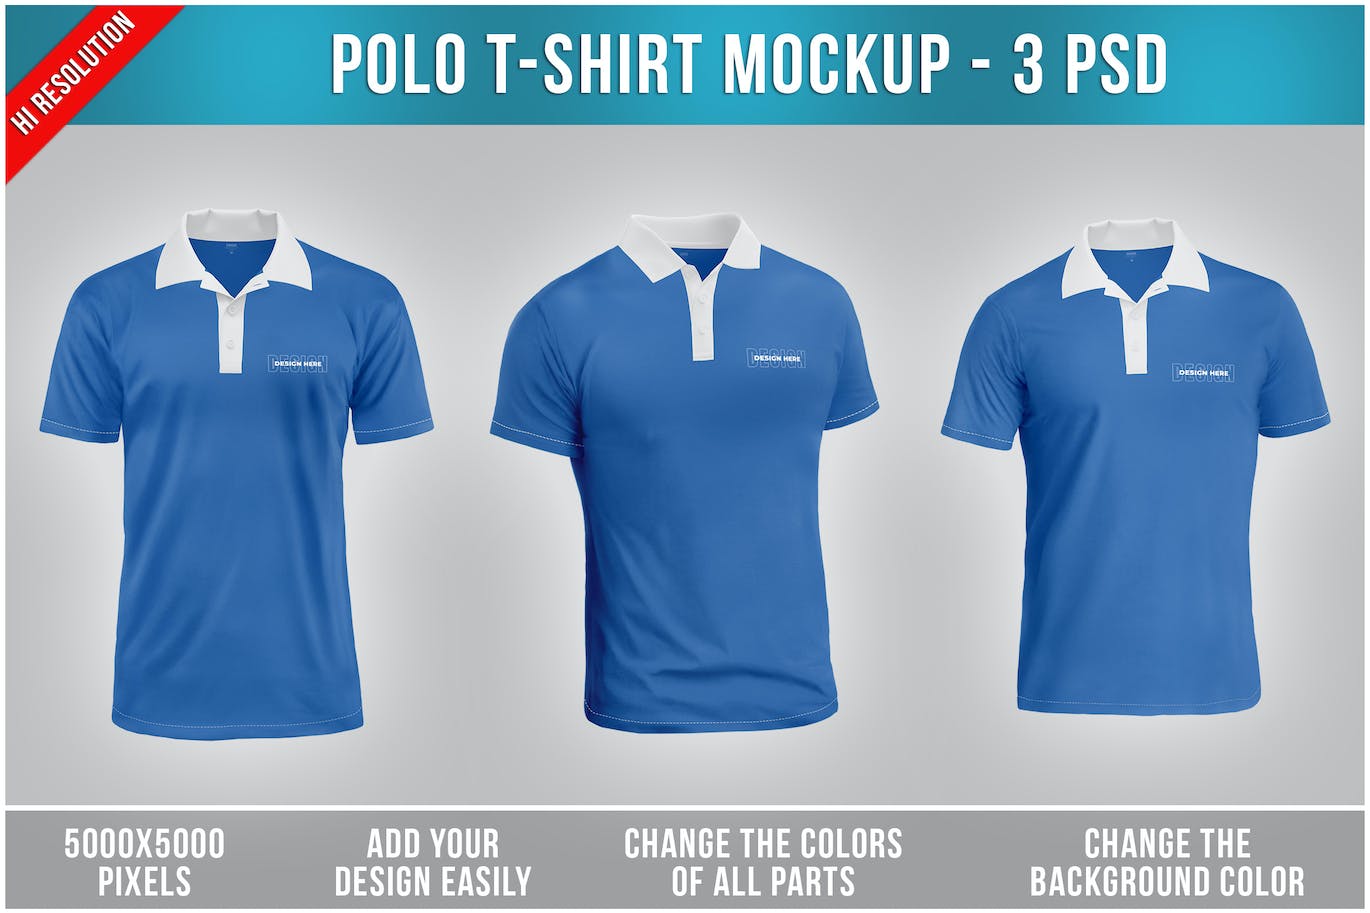 马球T恤服装设计效果图样机 Polo T-Shirt Mockup 样机素材 第1张